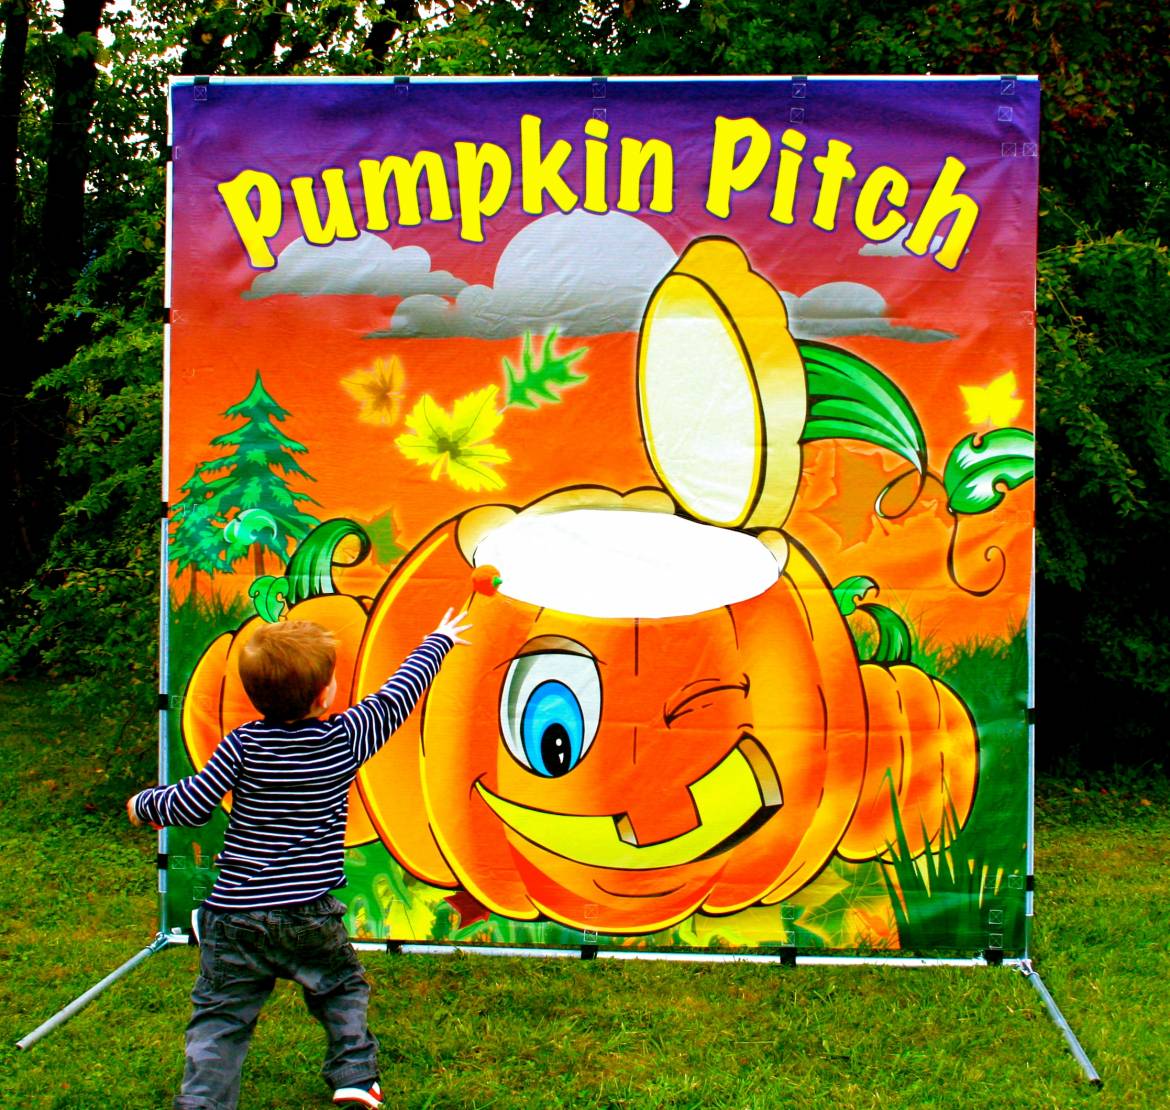 PumpkinPitchHR.jpg